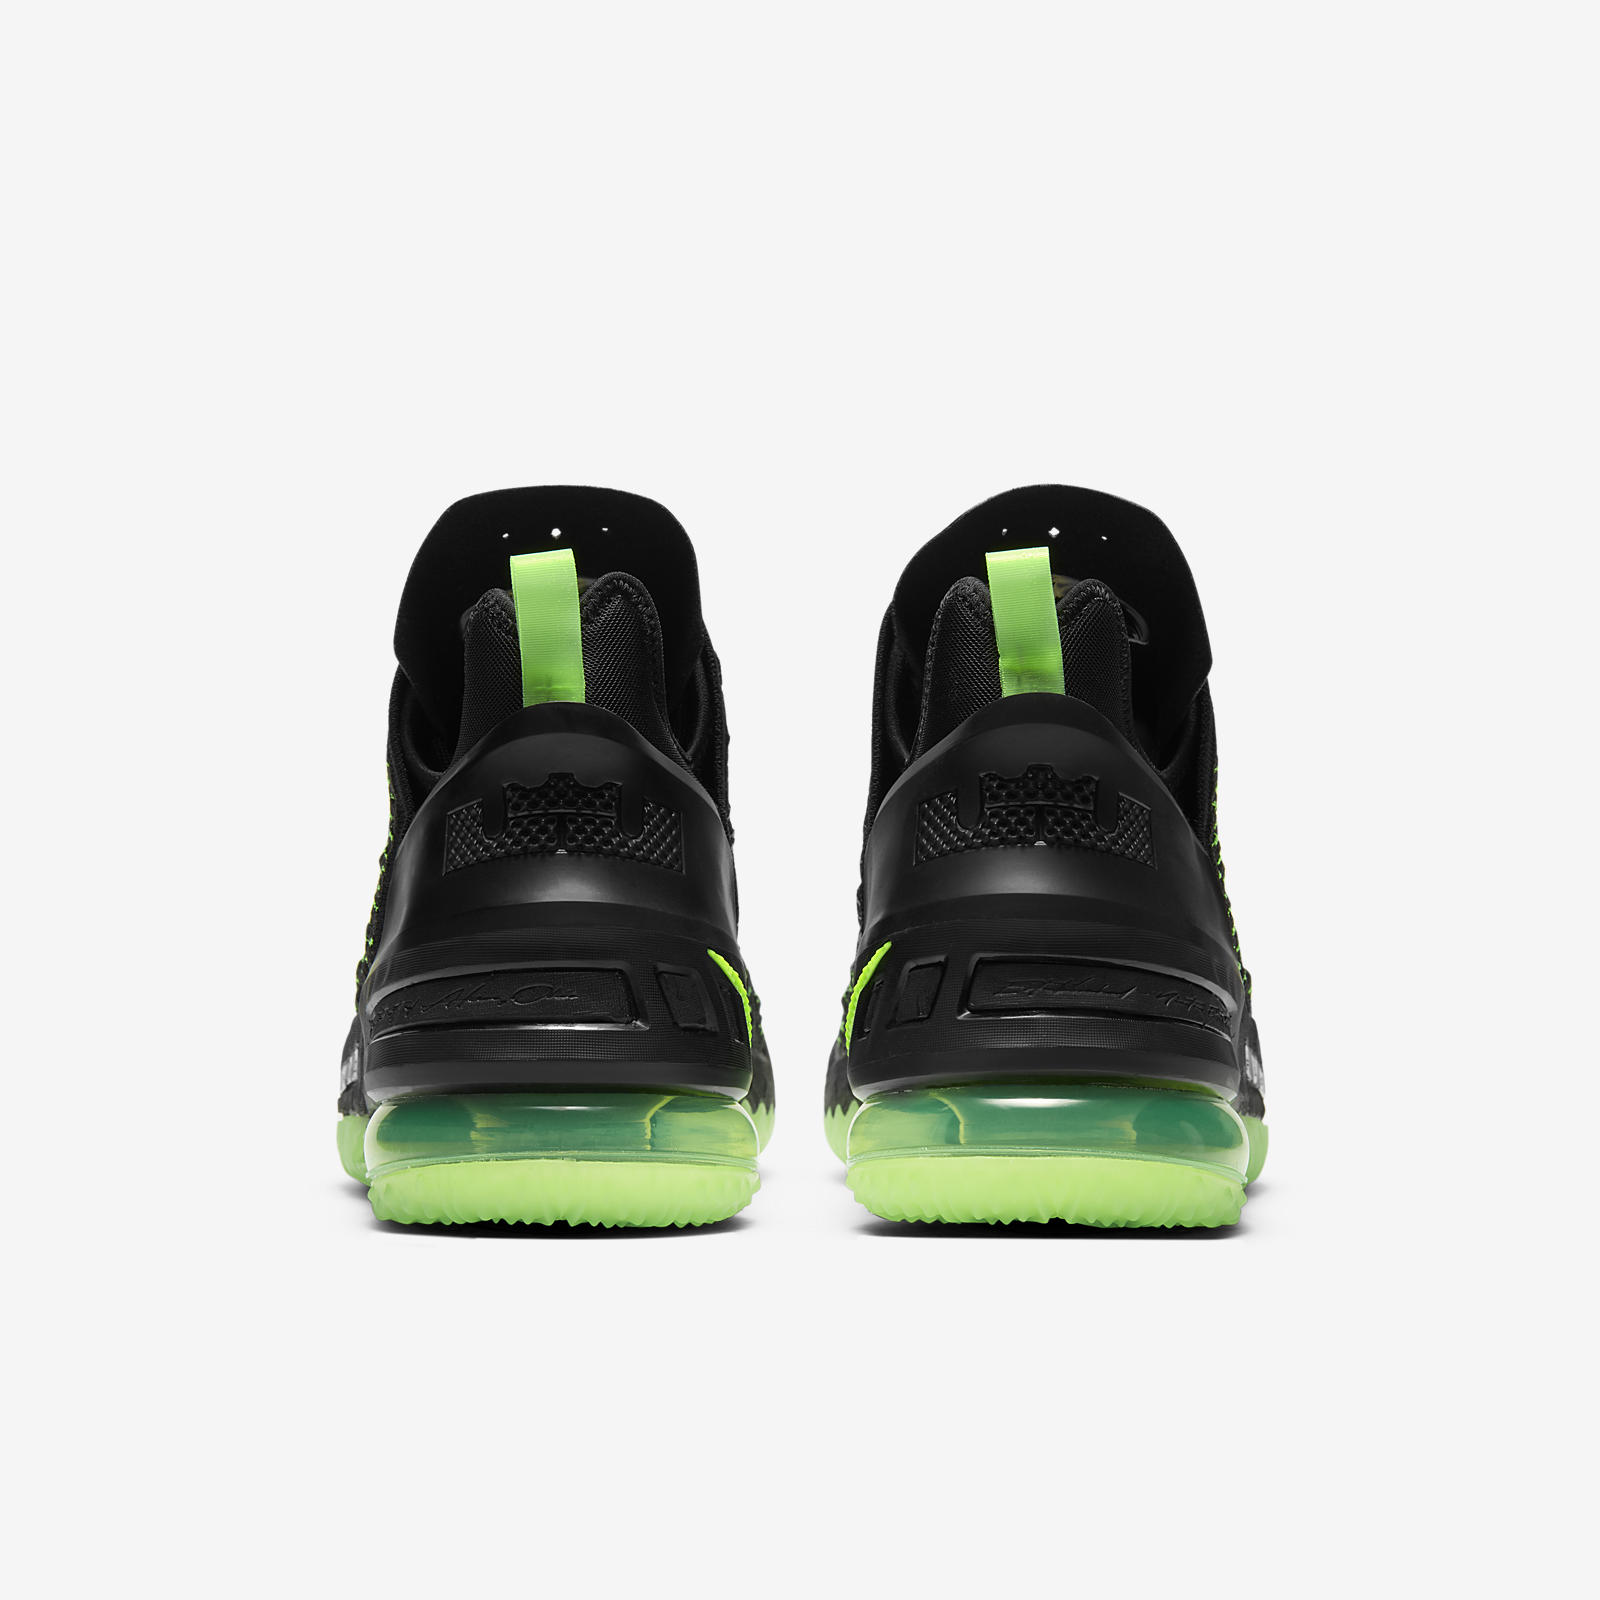 Nike LeBron 18
« Electric Green »